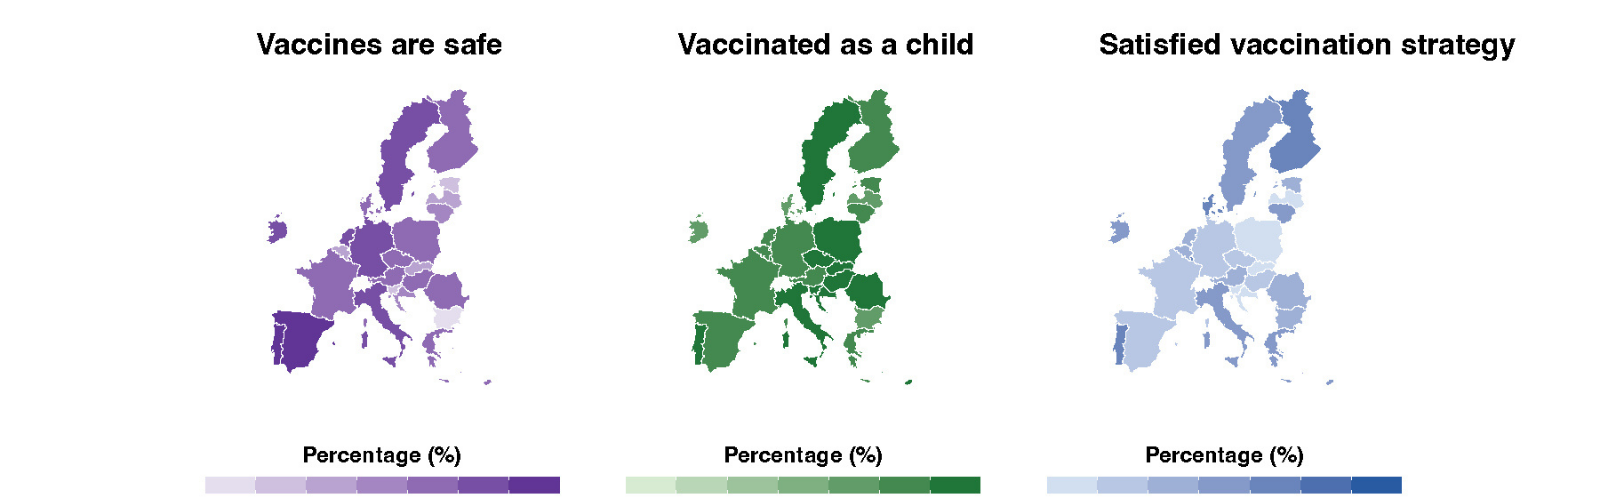 Un estudio de la UMU pone de relieve que las redes sociales lastran el éxito de las campañas de vacunación en Europa